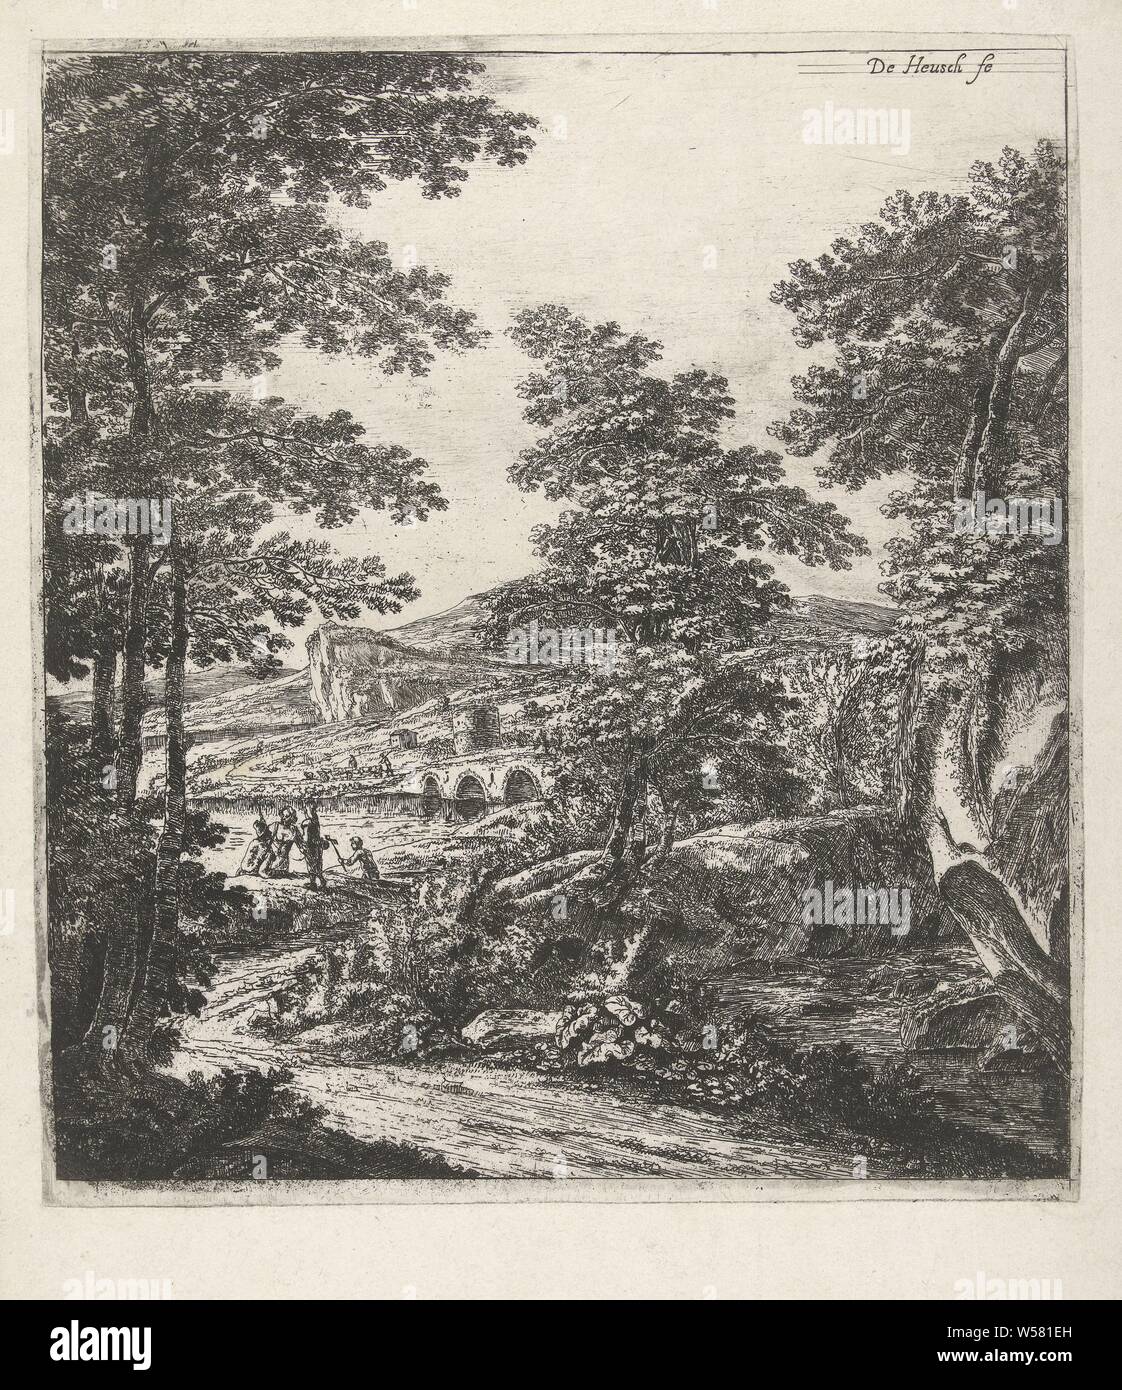 Landschaft mit einem steinernen Brücke, Landschaften (Titel der Serie), Willem de Heusch (auf Objekt erwähnt), Utrecht, C. 1635-1692, Papier, Ätzen, H 261 mm x B 235 mm Stockfoto